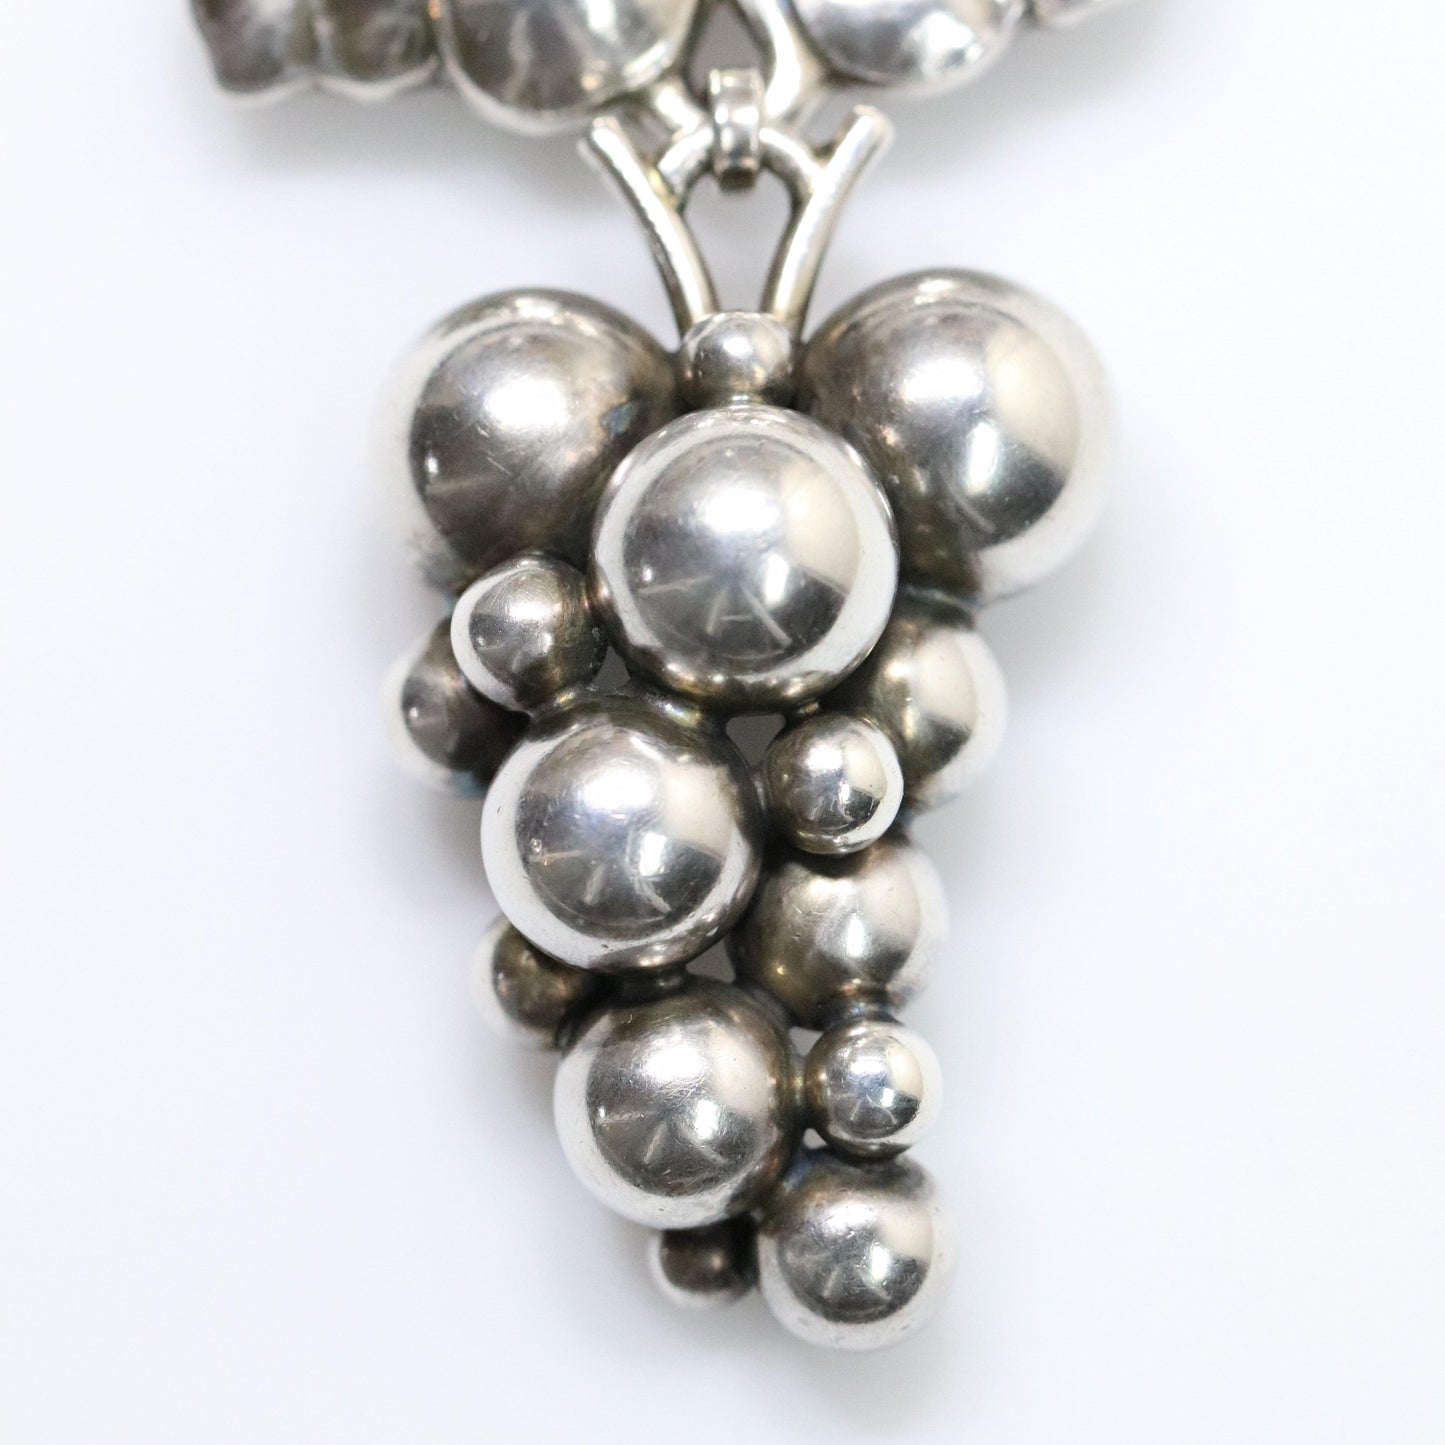 Georg Jensen Jewelry | Large Grape Art Nouveau Silver Vintage Brooch 217 - Carmel Fine Silver Jewelry